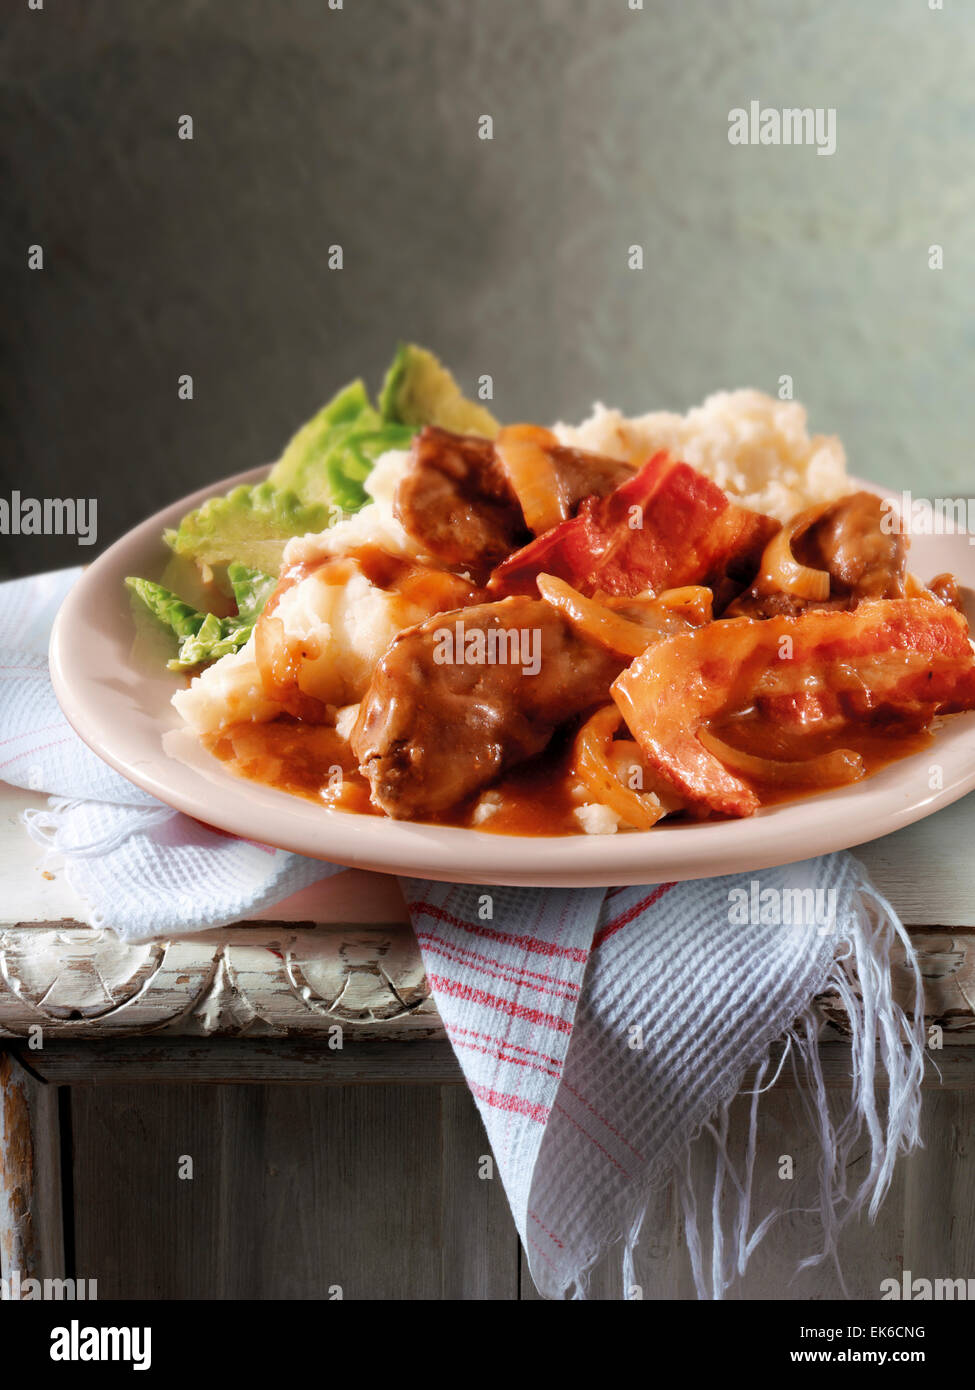 Britannico tradizionale ricetta cotta di fegato e pancetta casseruola con purea di patate servita su una piastra in un tavolo rustico impostazione Foto Stock